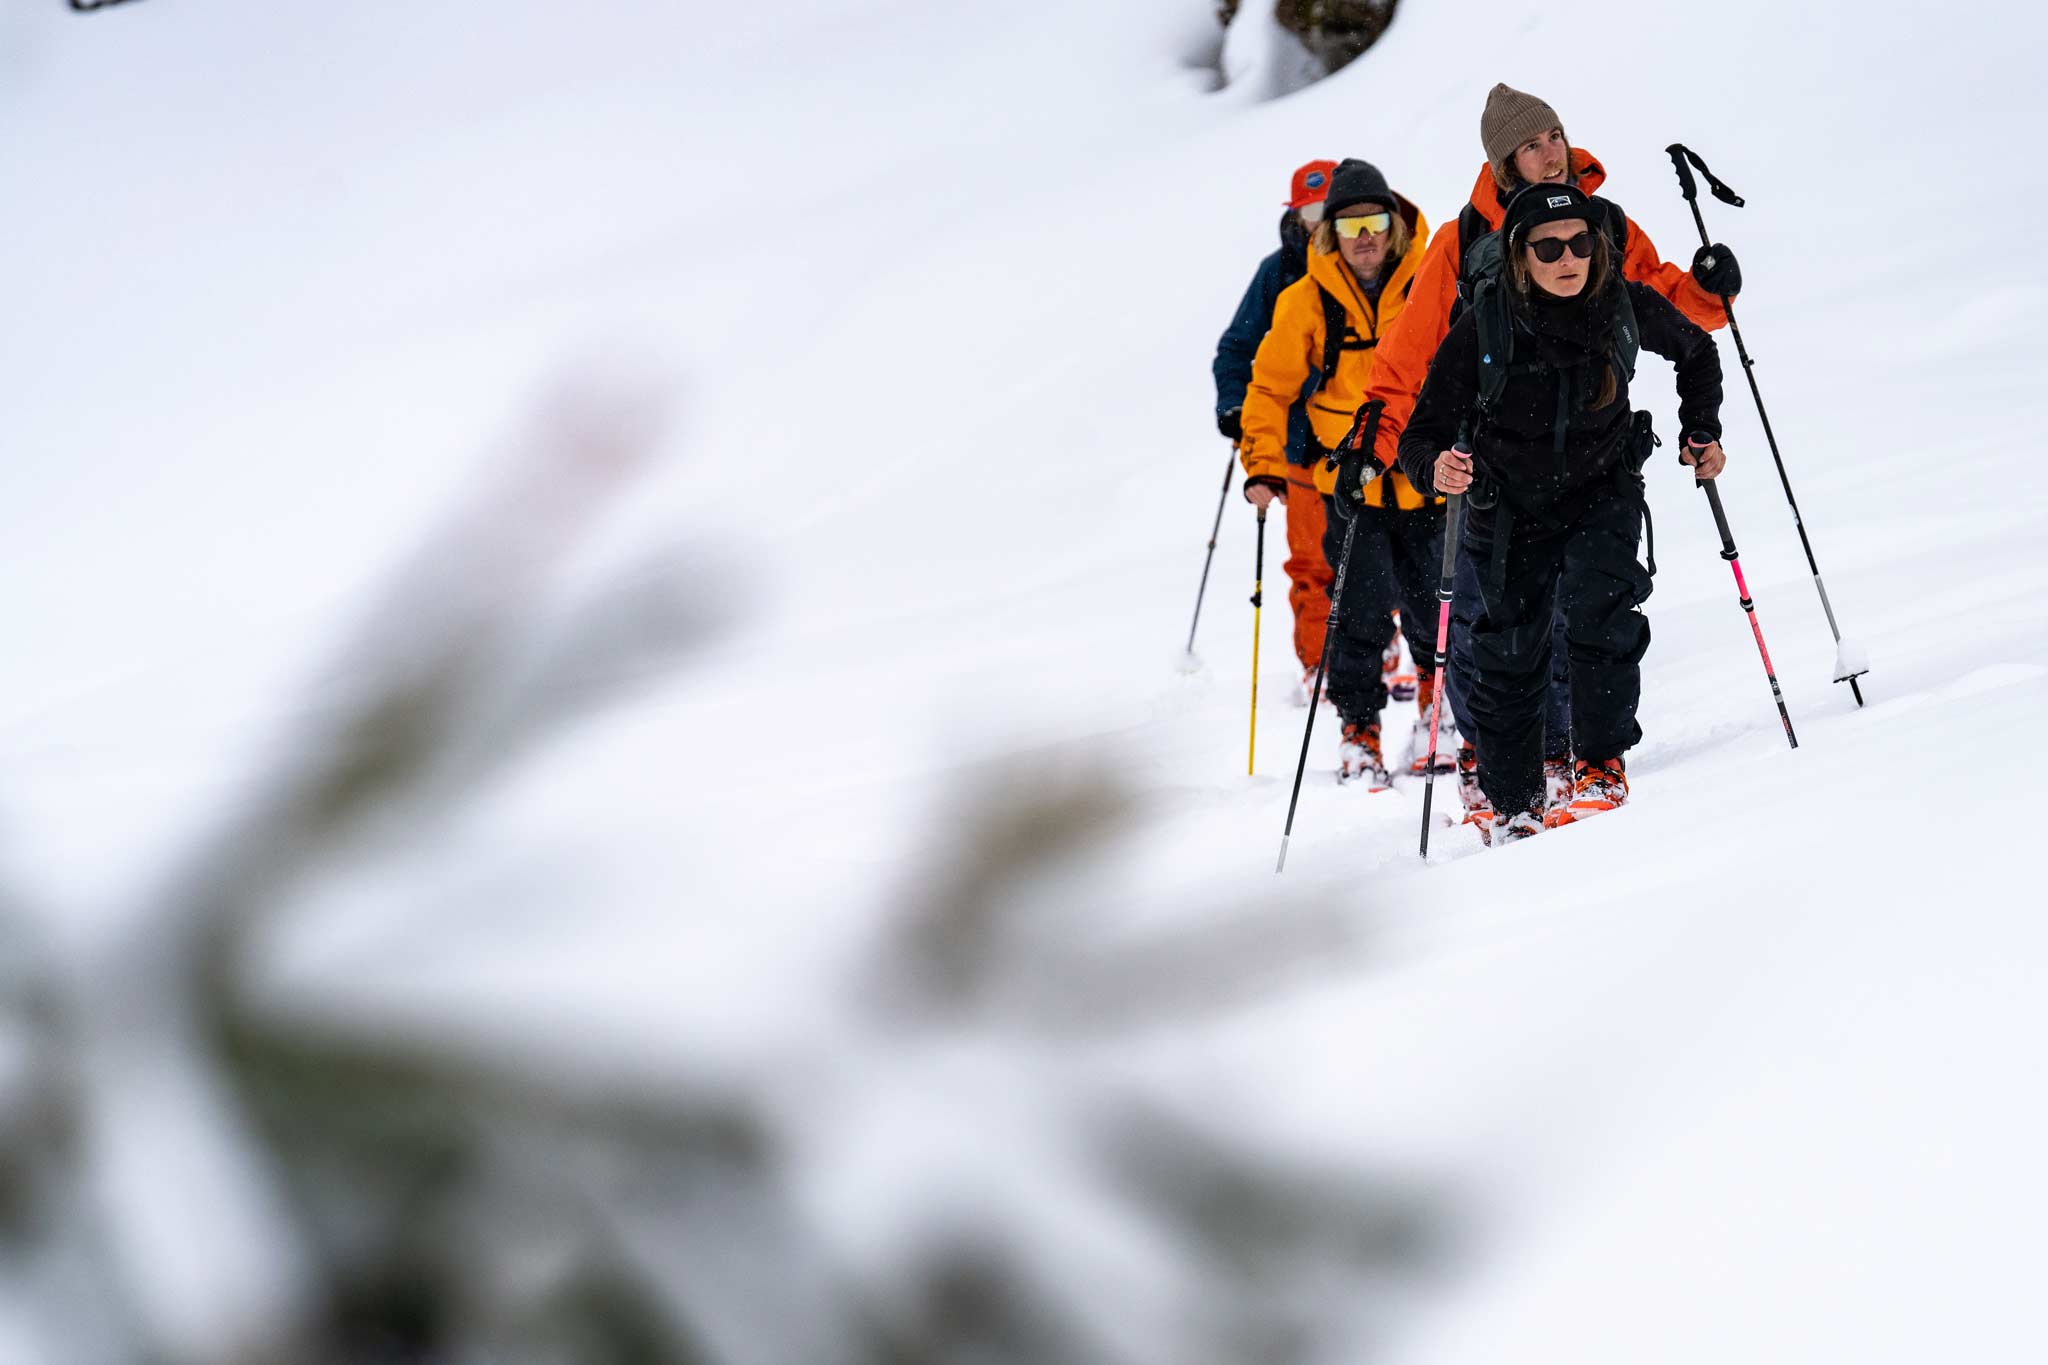 Der nächste Schritt nach dem Kauf von nachhaltigen Produkten: selber nachhaltig handeln - z.B. durch Skitouren.